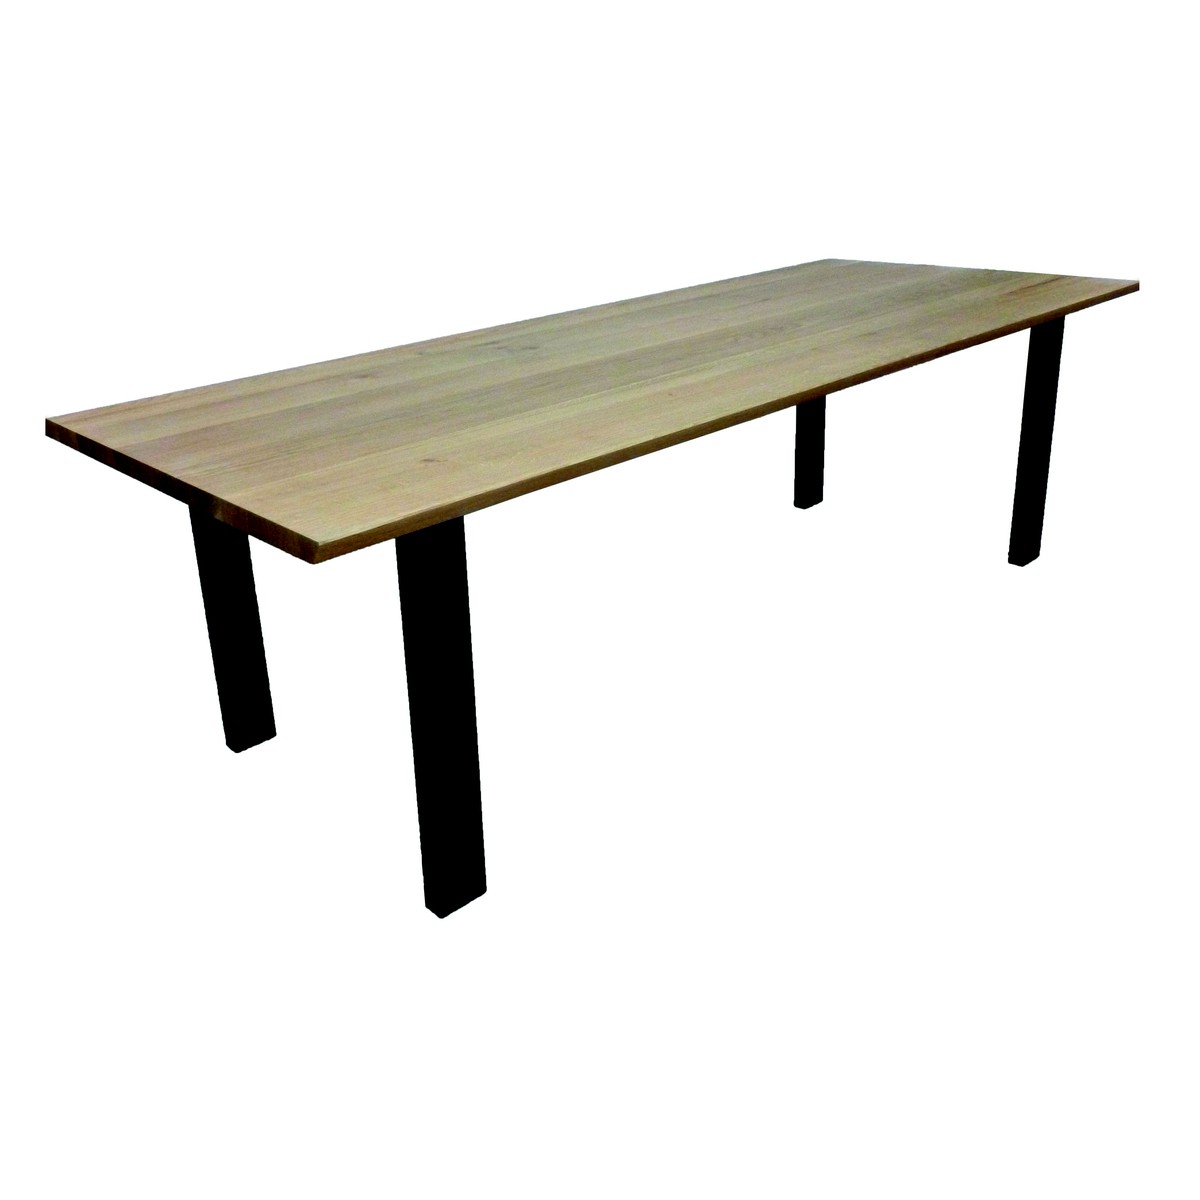   Table de bar Alek Droit rectangulaire  160x100x110cm